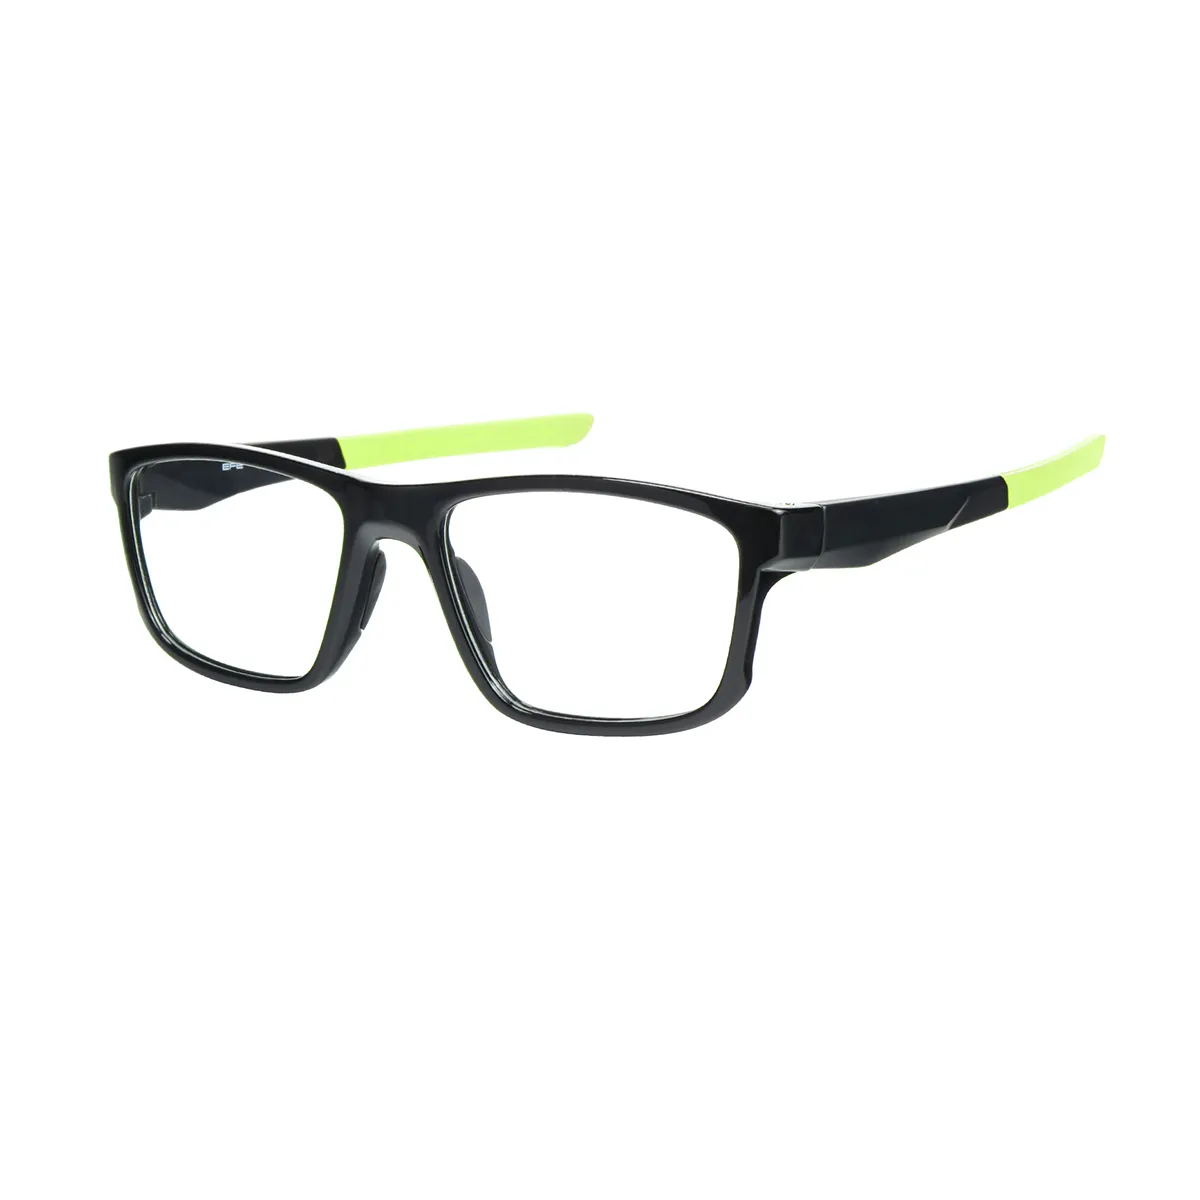 Darwin - Rectangle Black-Green Glasses for Men